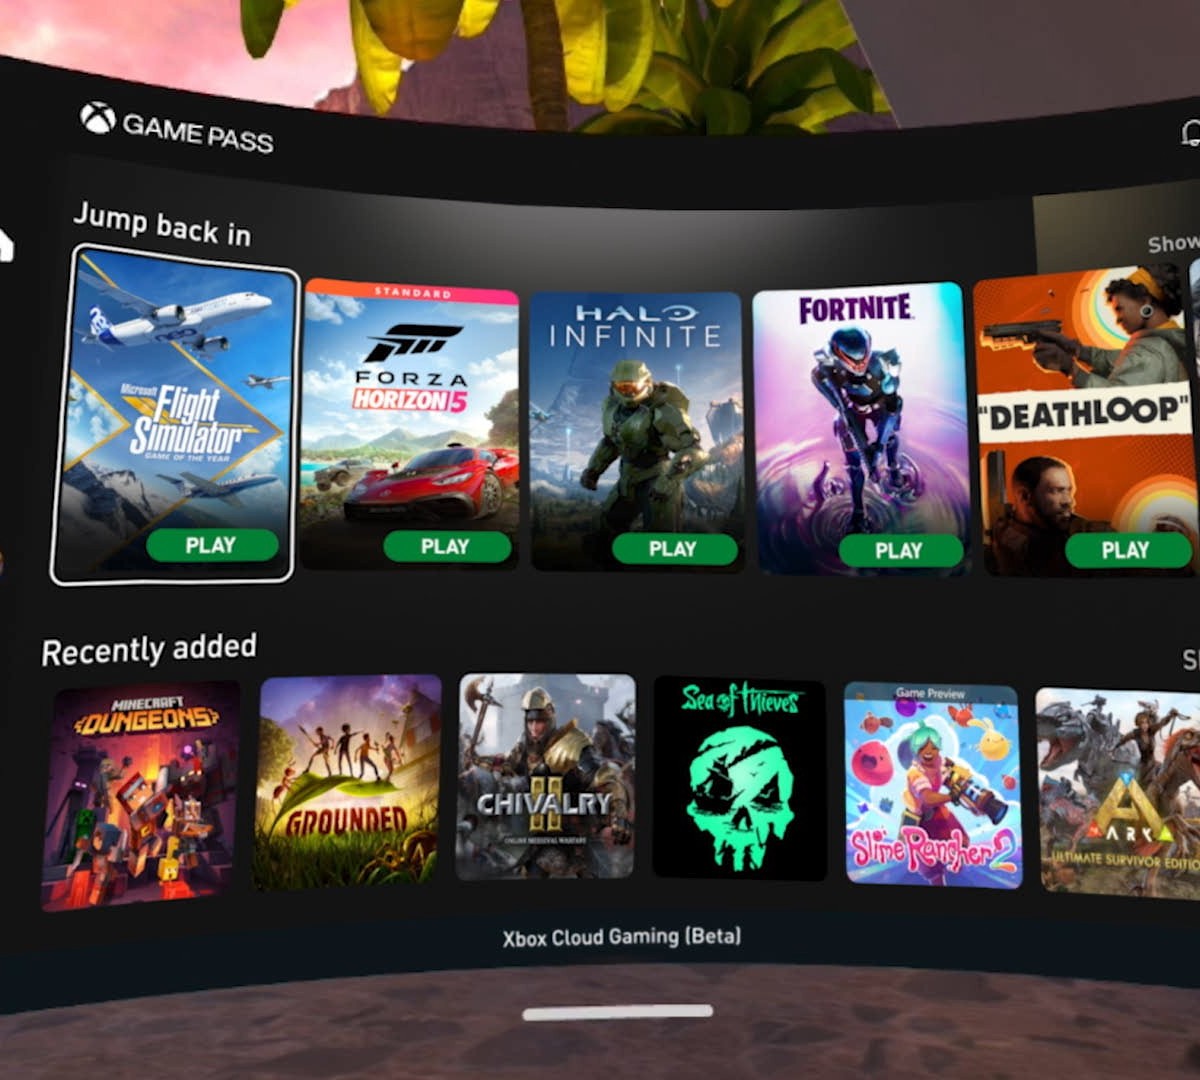 TVs da Samsung recebem apps do Xbox Cloud Gaming e GeForce Now